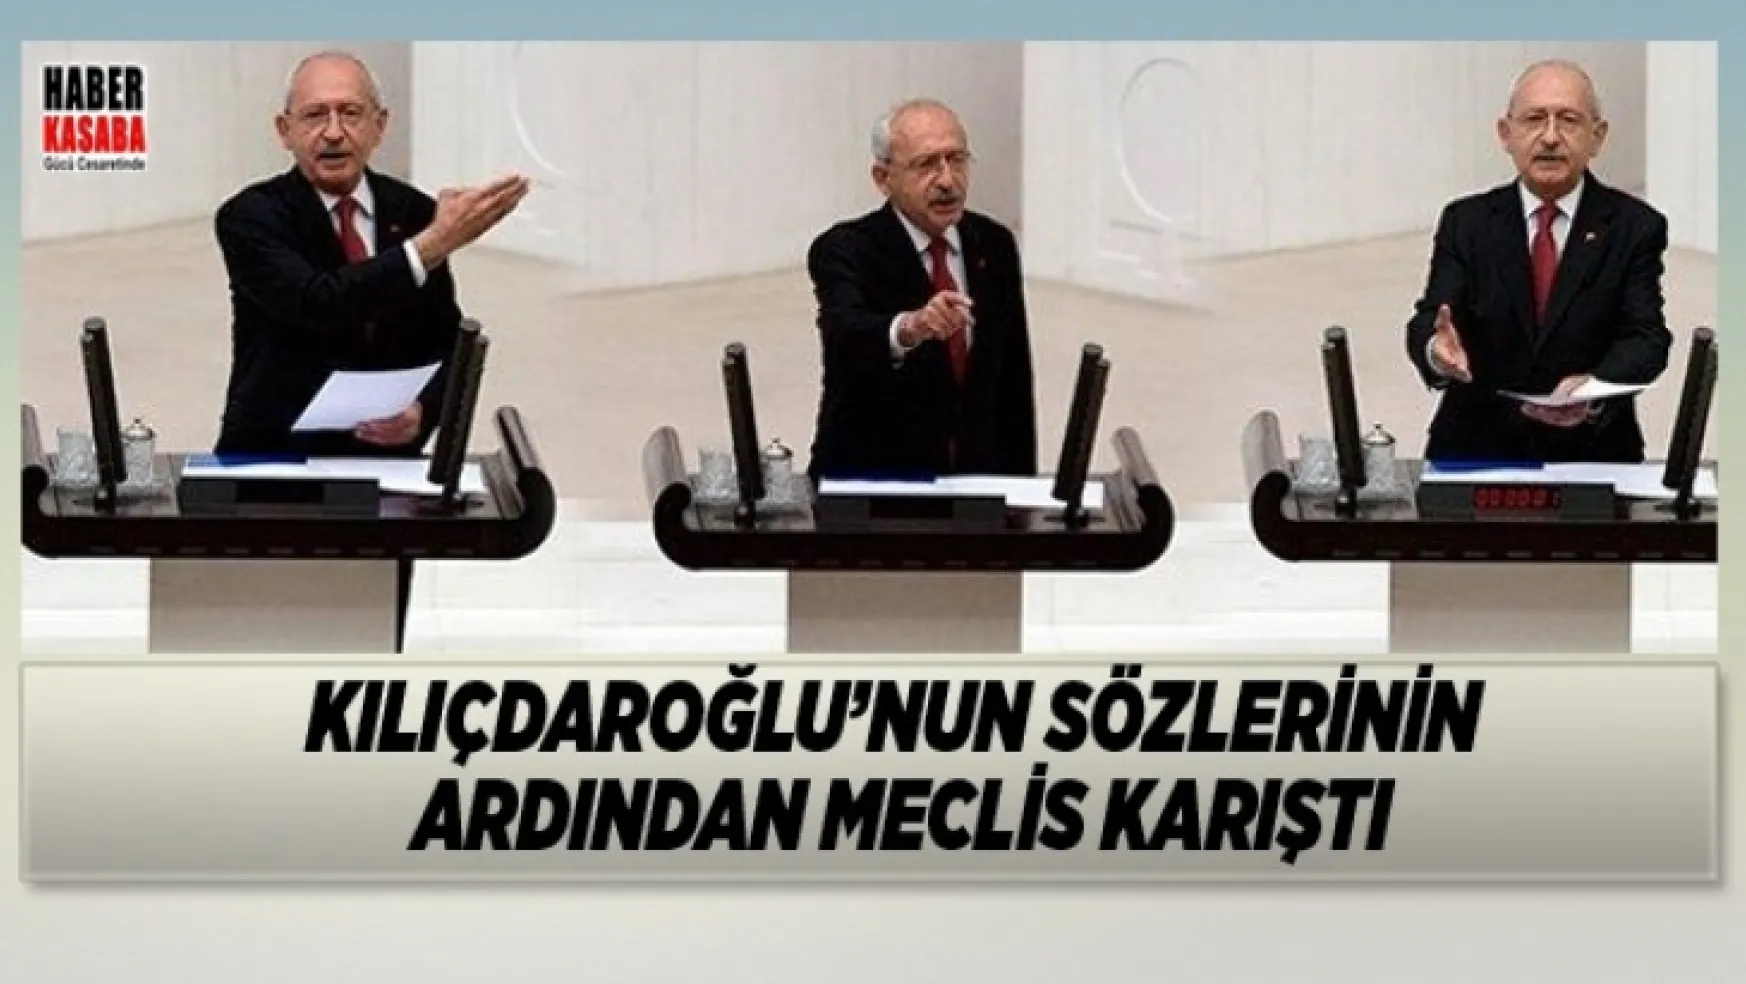 Kılıçdaroğlu'nun sözleri Meclisi karıştırdı